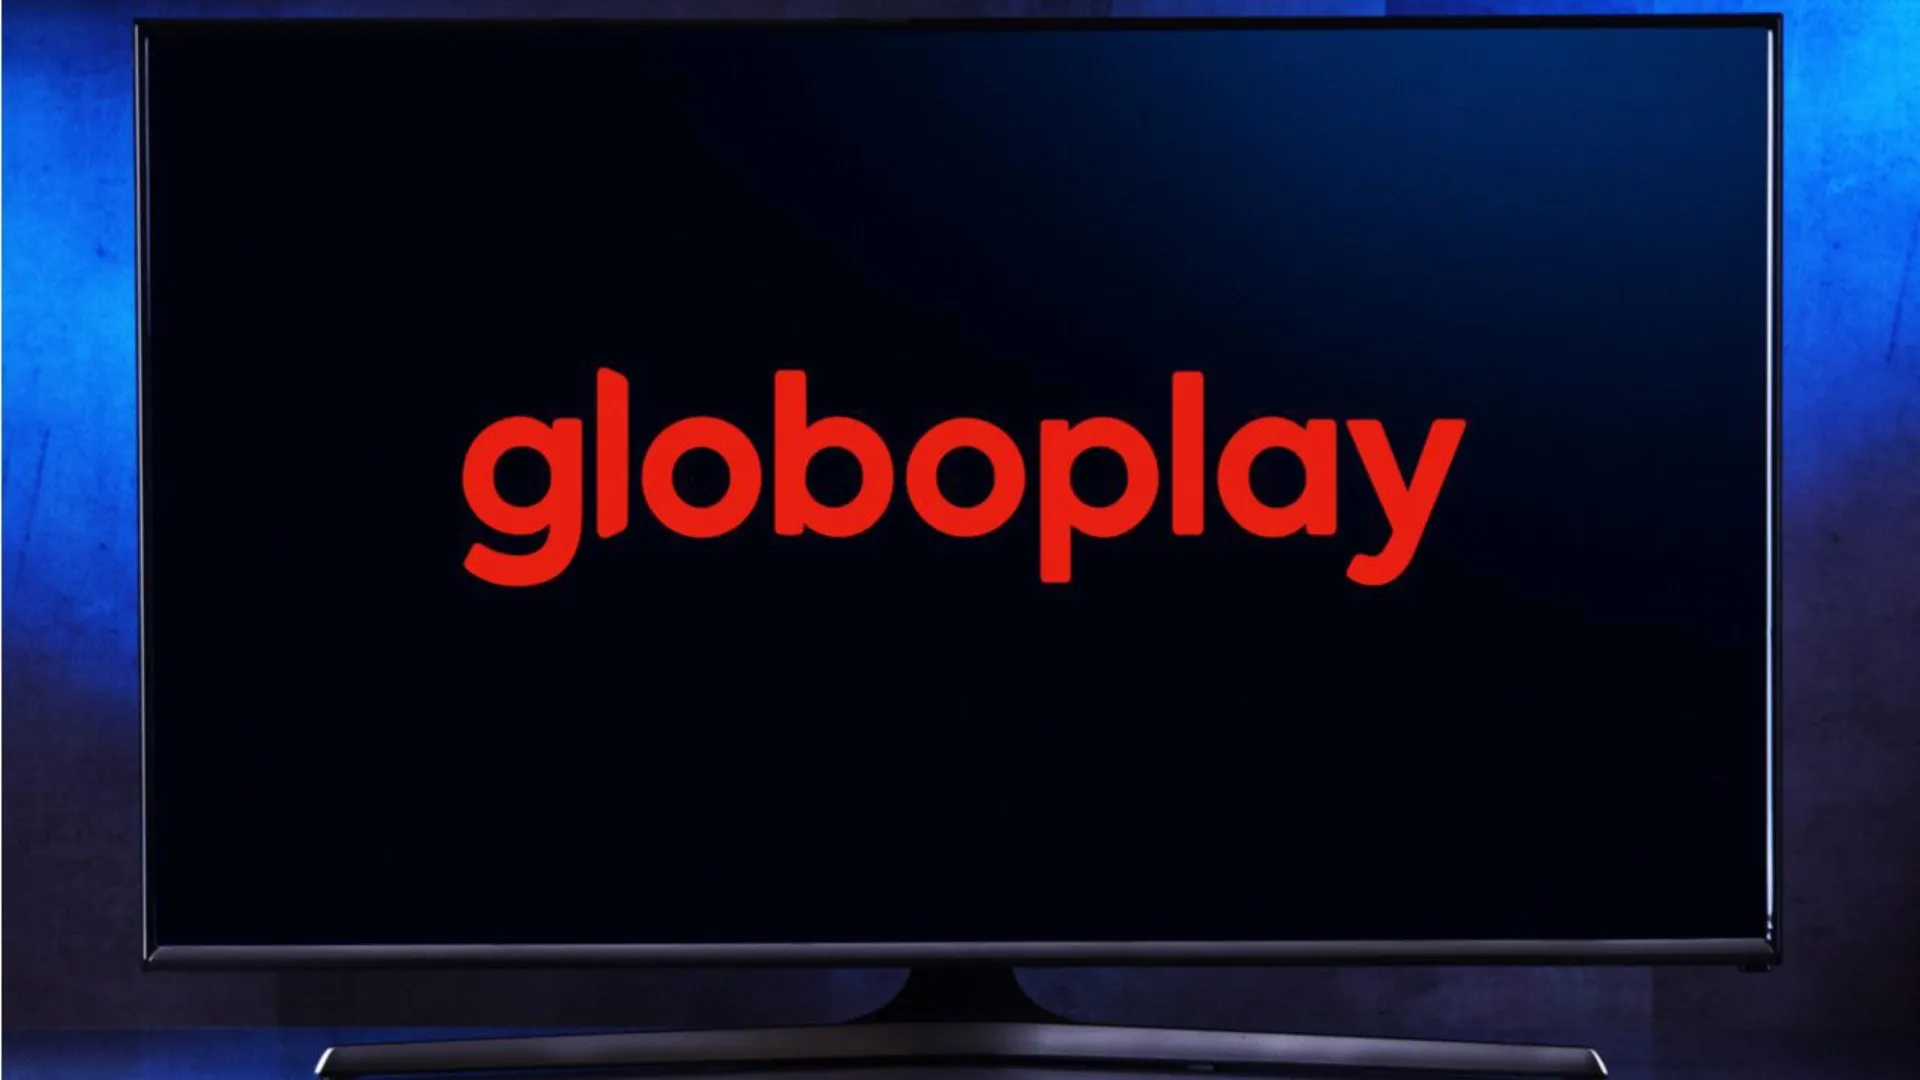 Saiba como assistir à TV Globo ao vivo pelo Globoplay - Olhar Digital